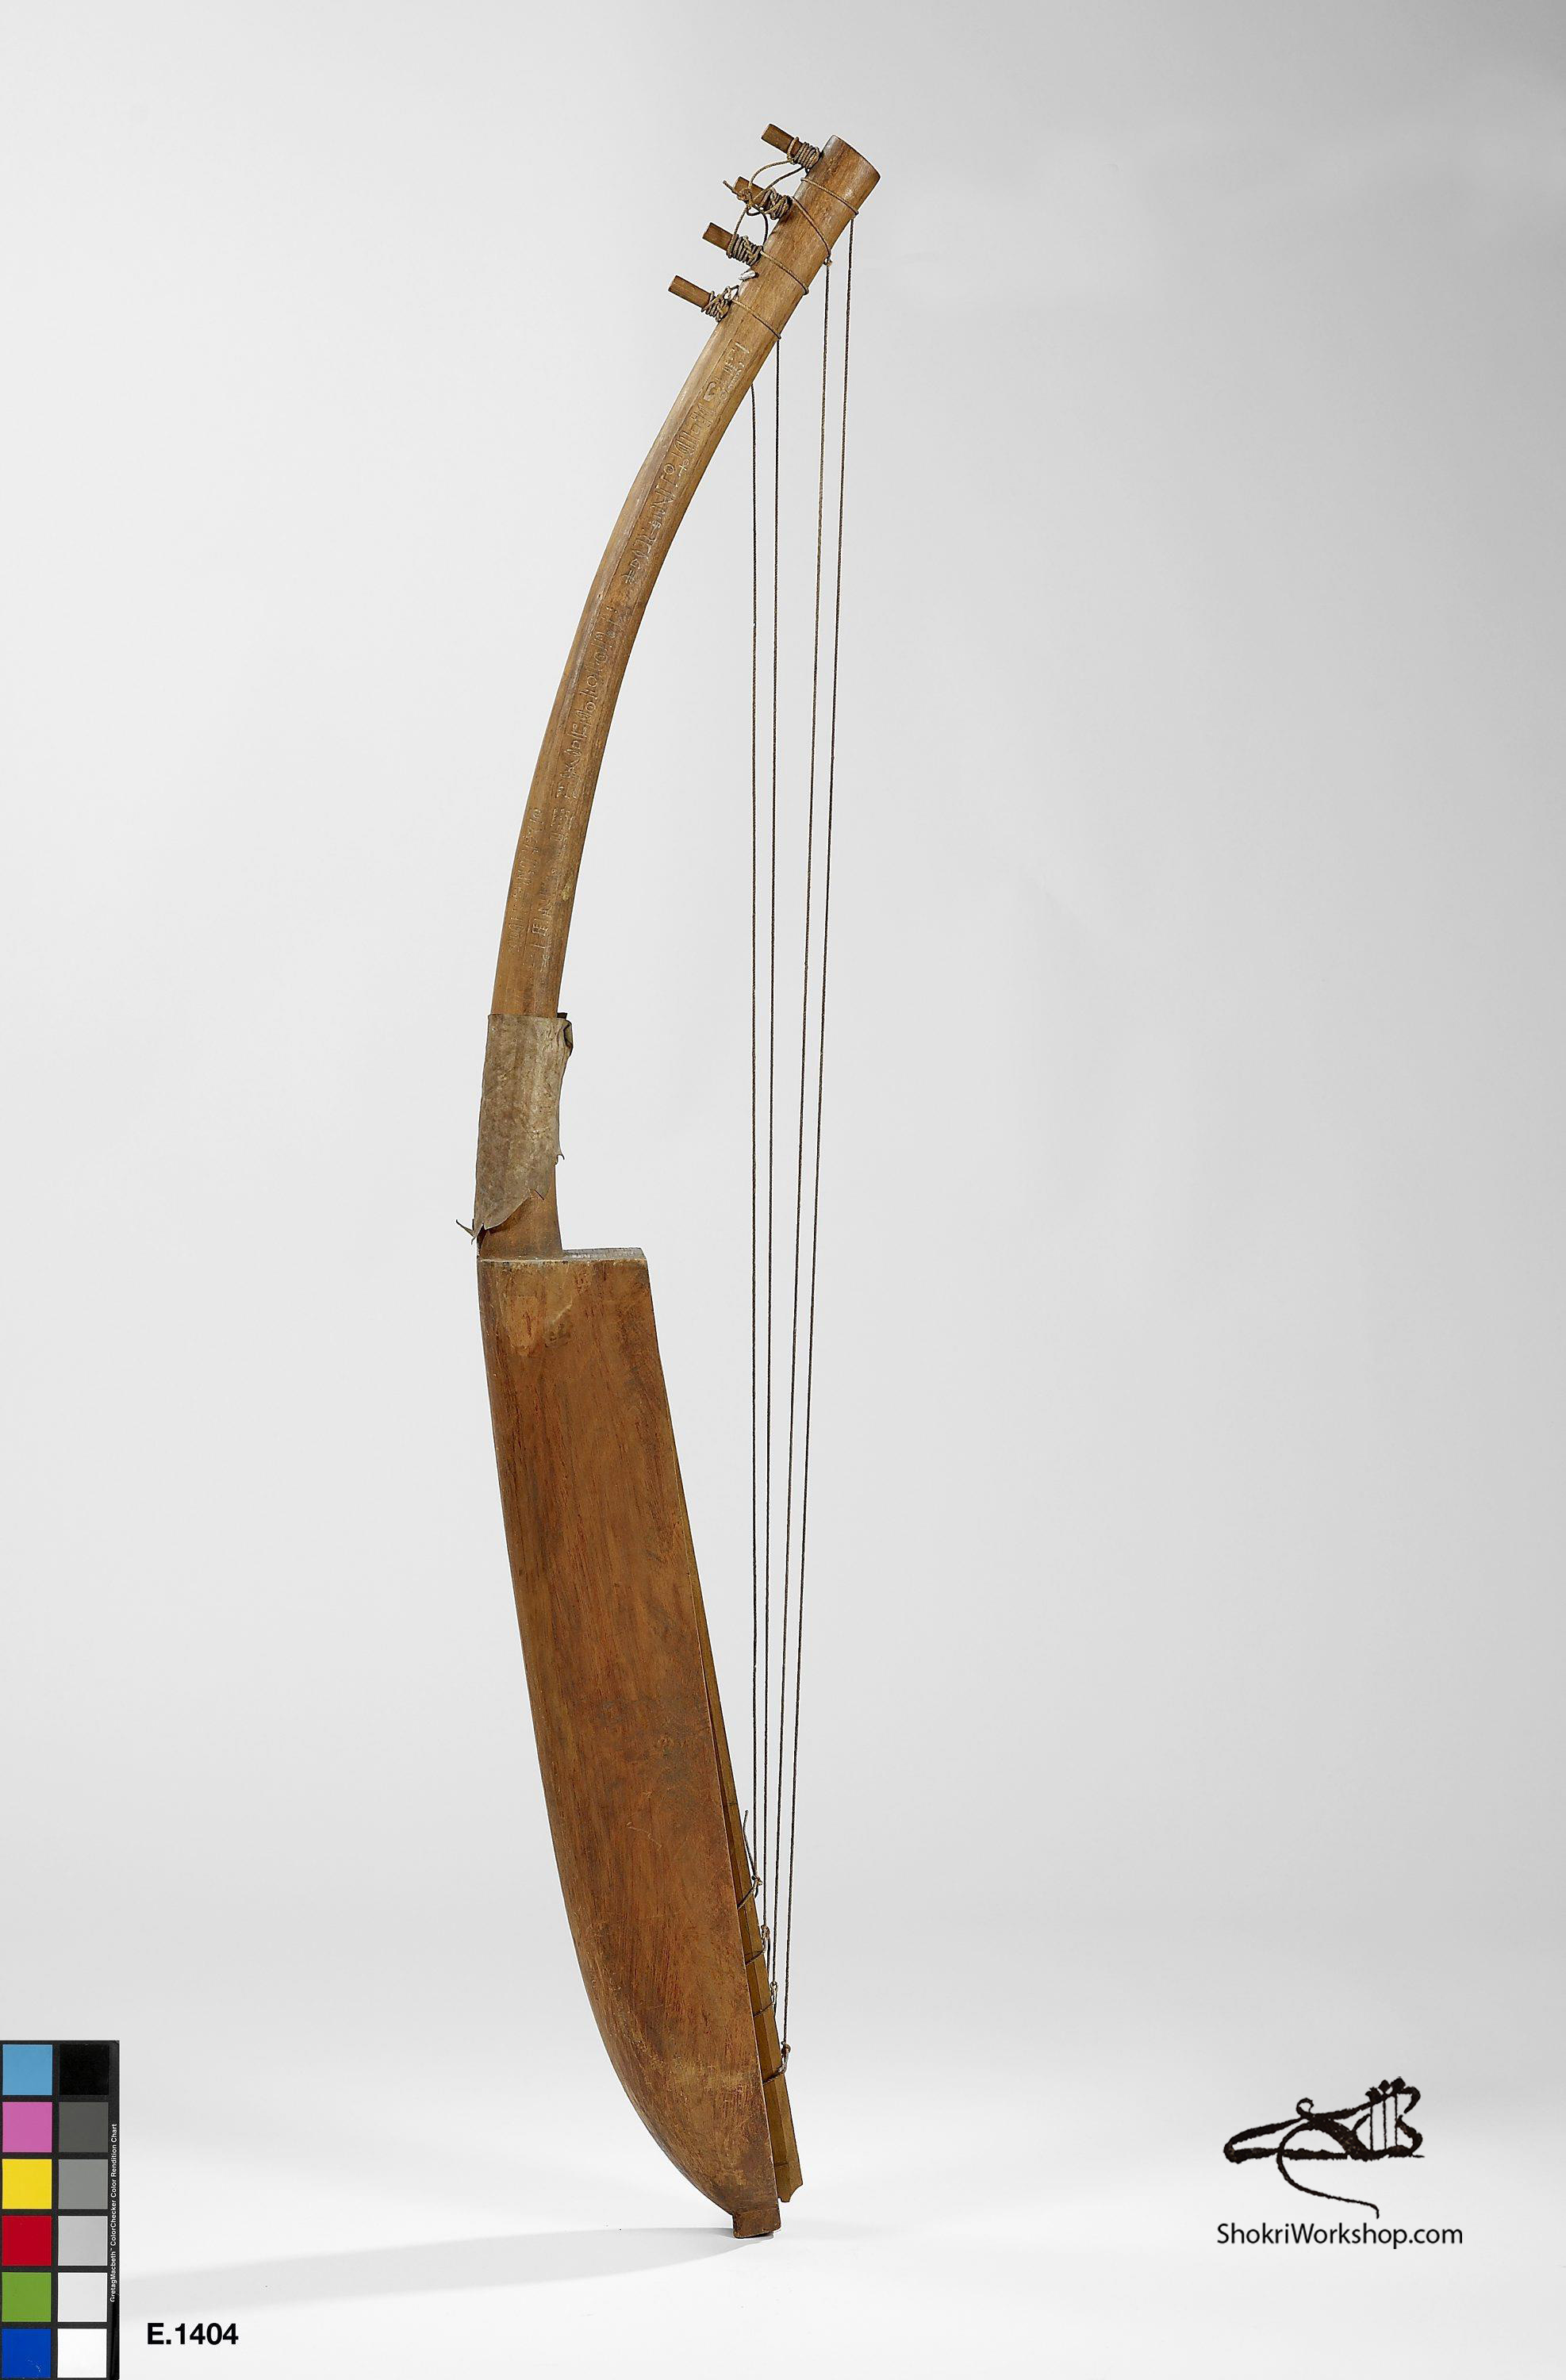 Fac-simile d'une harpe arquée égyptienne conservée au musée du Louvre